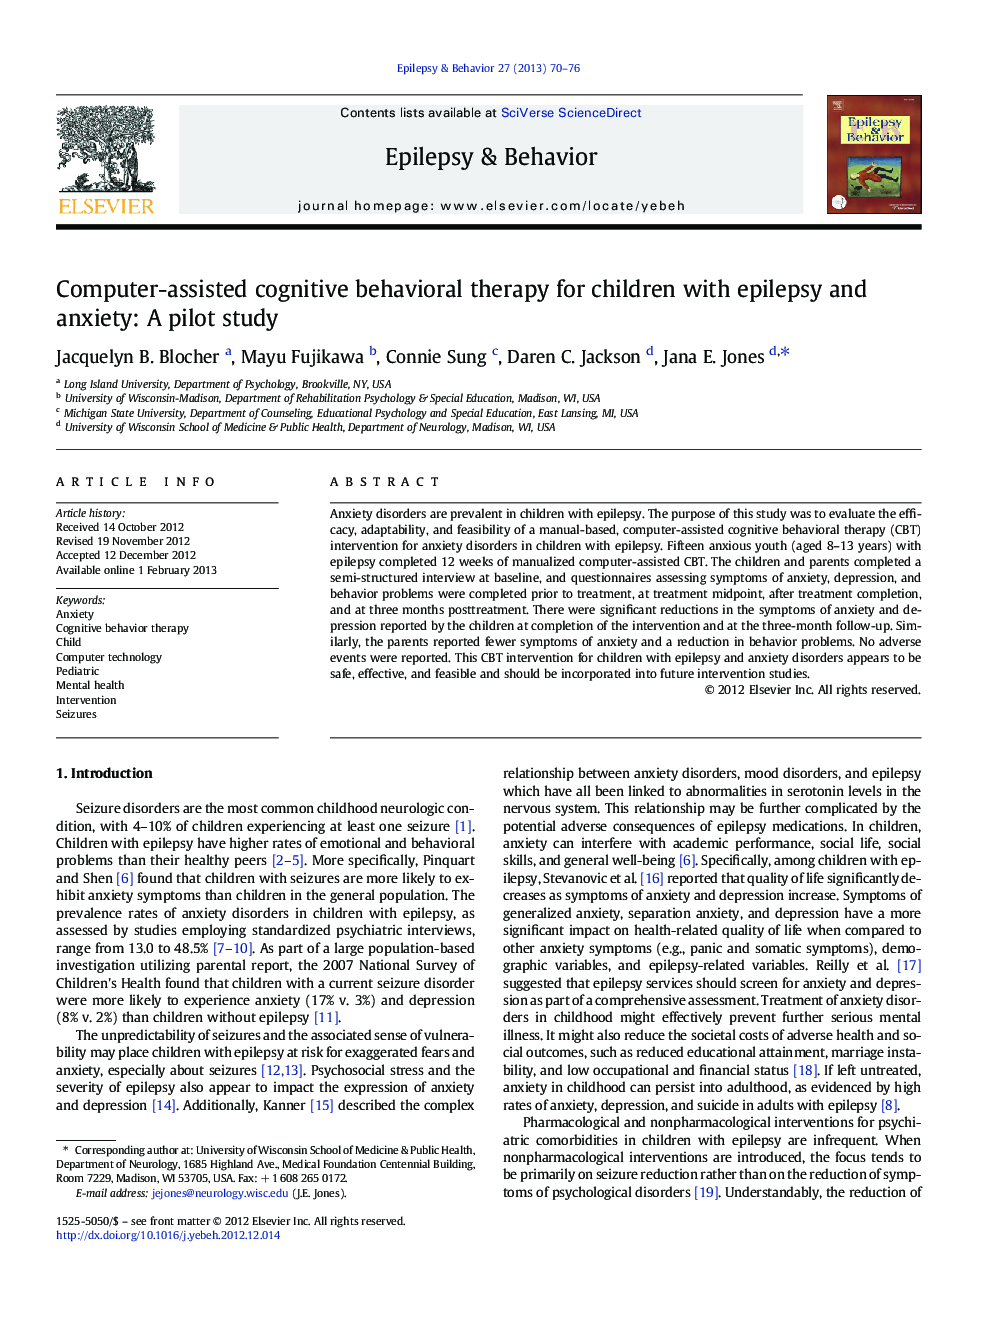 درمان شناختی رفتاری با کمک کامپیوتر برای کودکان مبتلا به صرع و اضطراب: یک مطالعه آزمایشی 